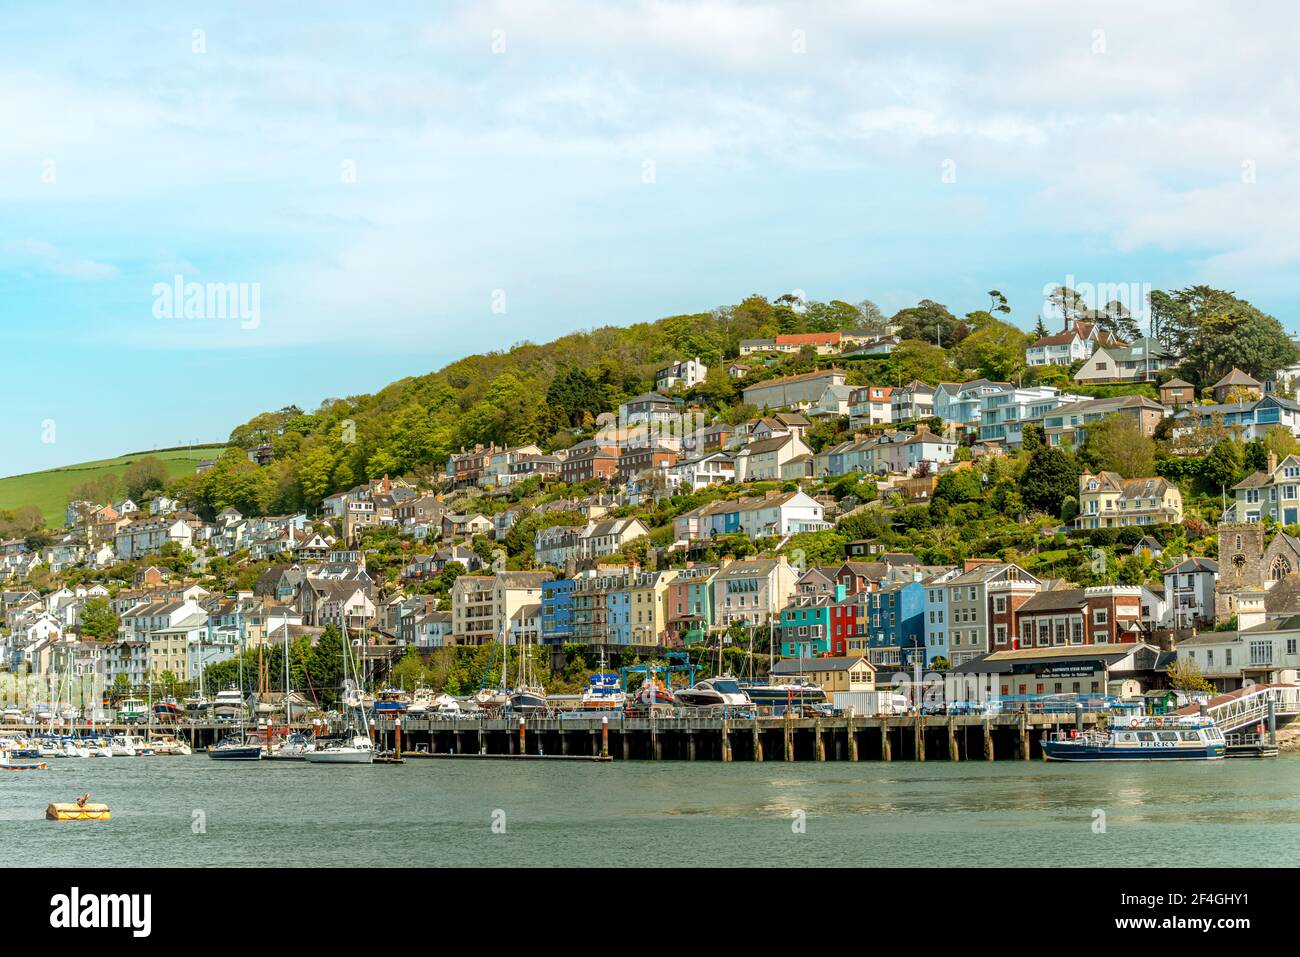 Farbenfrohe Häuser am Ufer von Kingswear von Dartmouth, Devon, England, Großbritannien aus gesehen Stockfoto